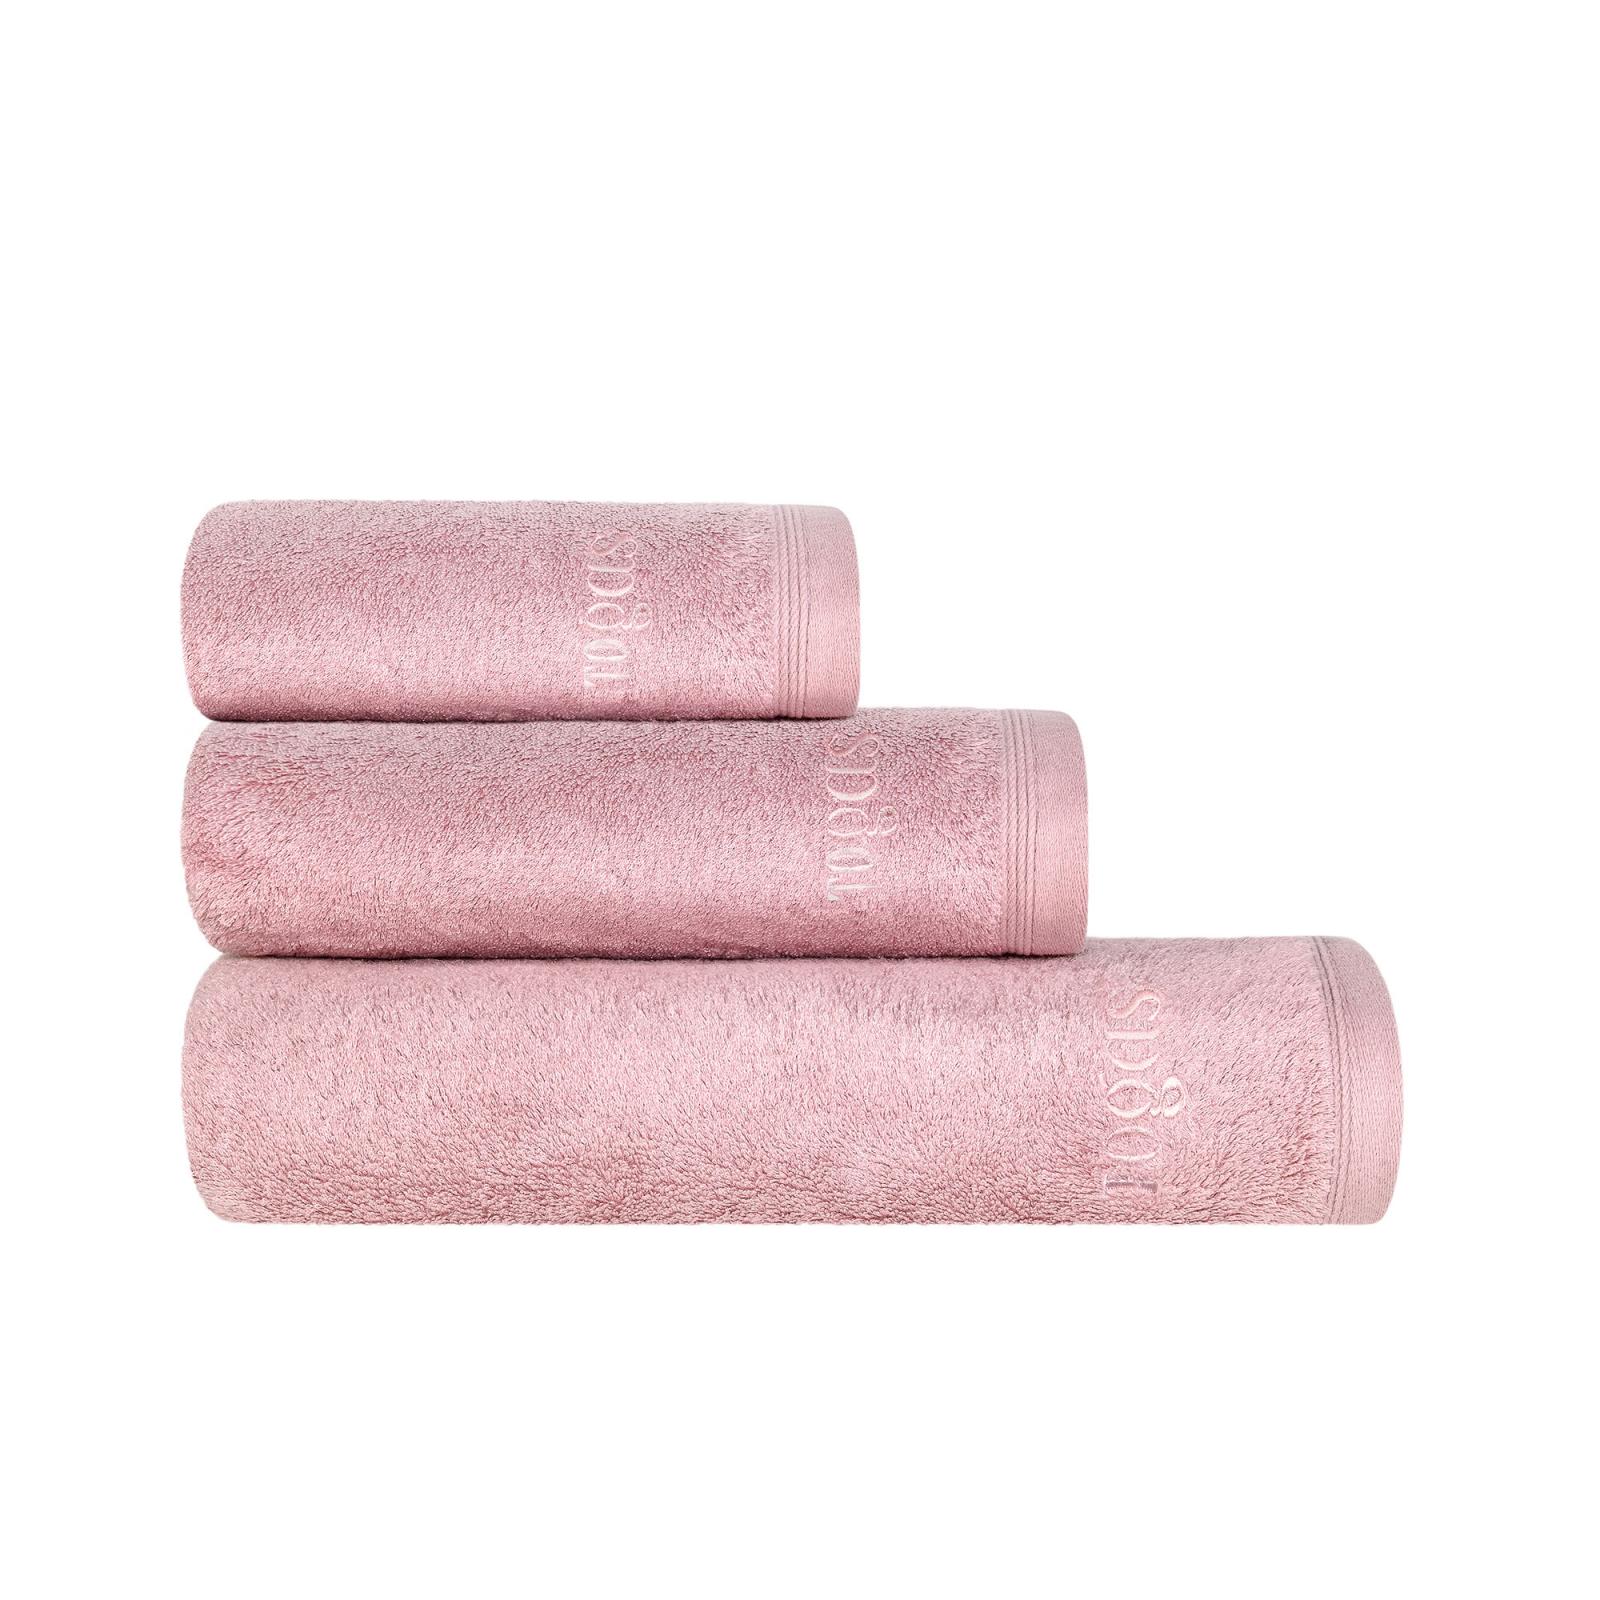 Полотенце 40х60 см Пуатье розовое Togas полотенце togas пуатье белое 100х150 см